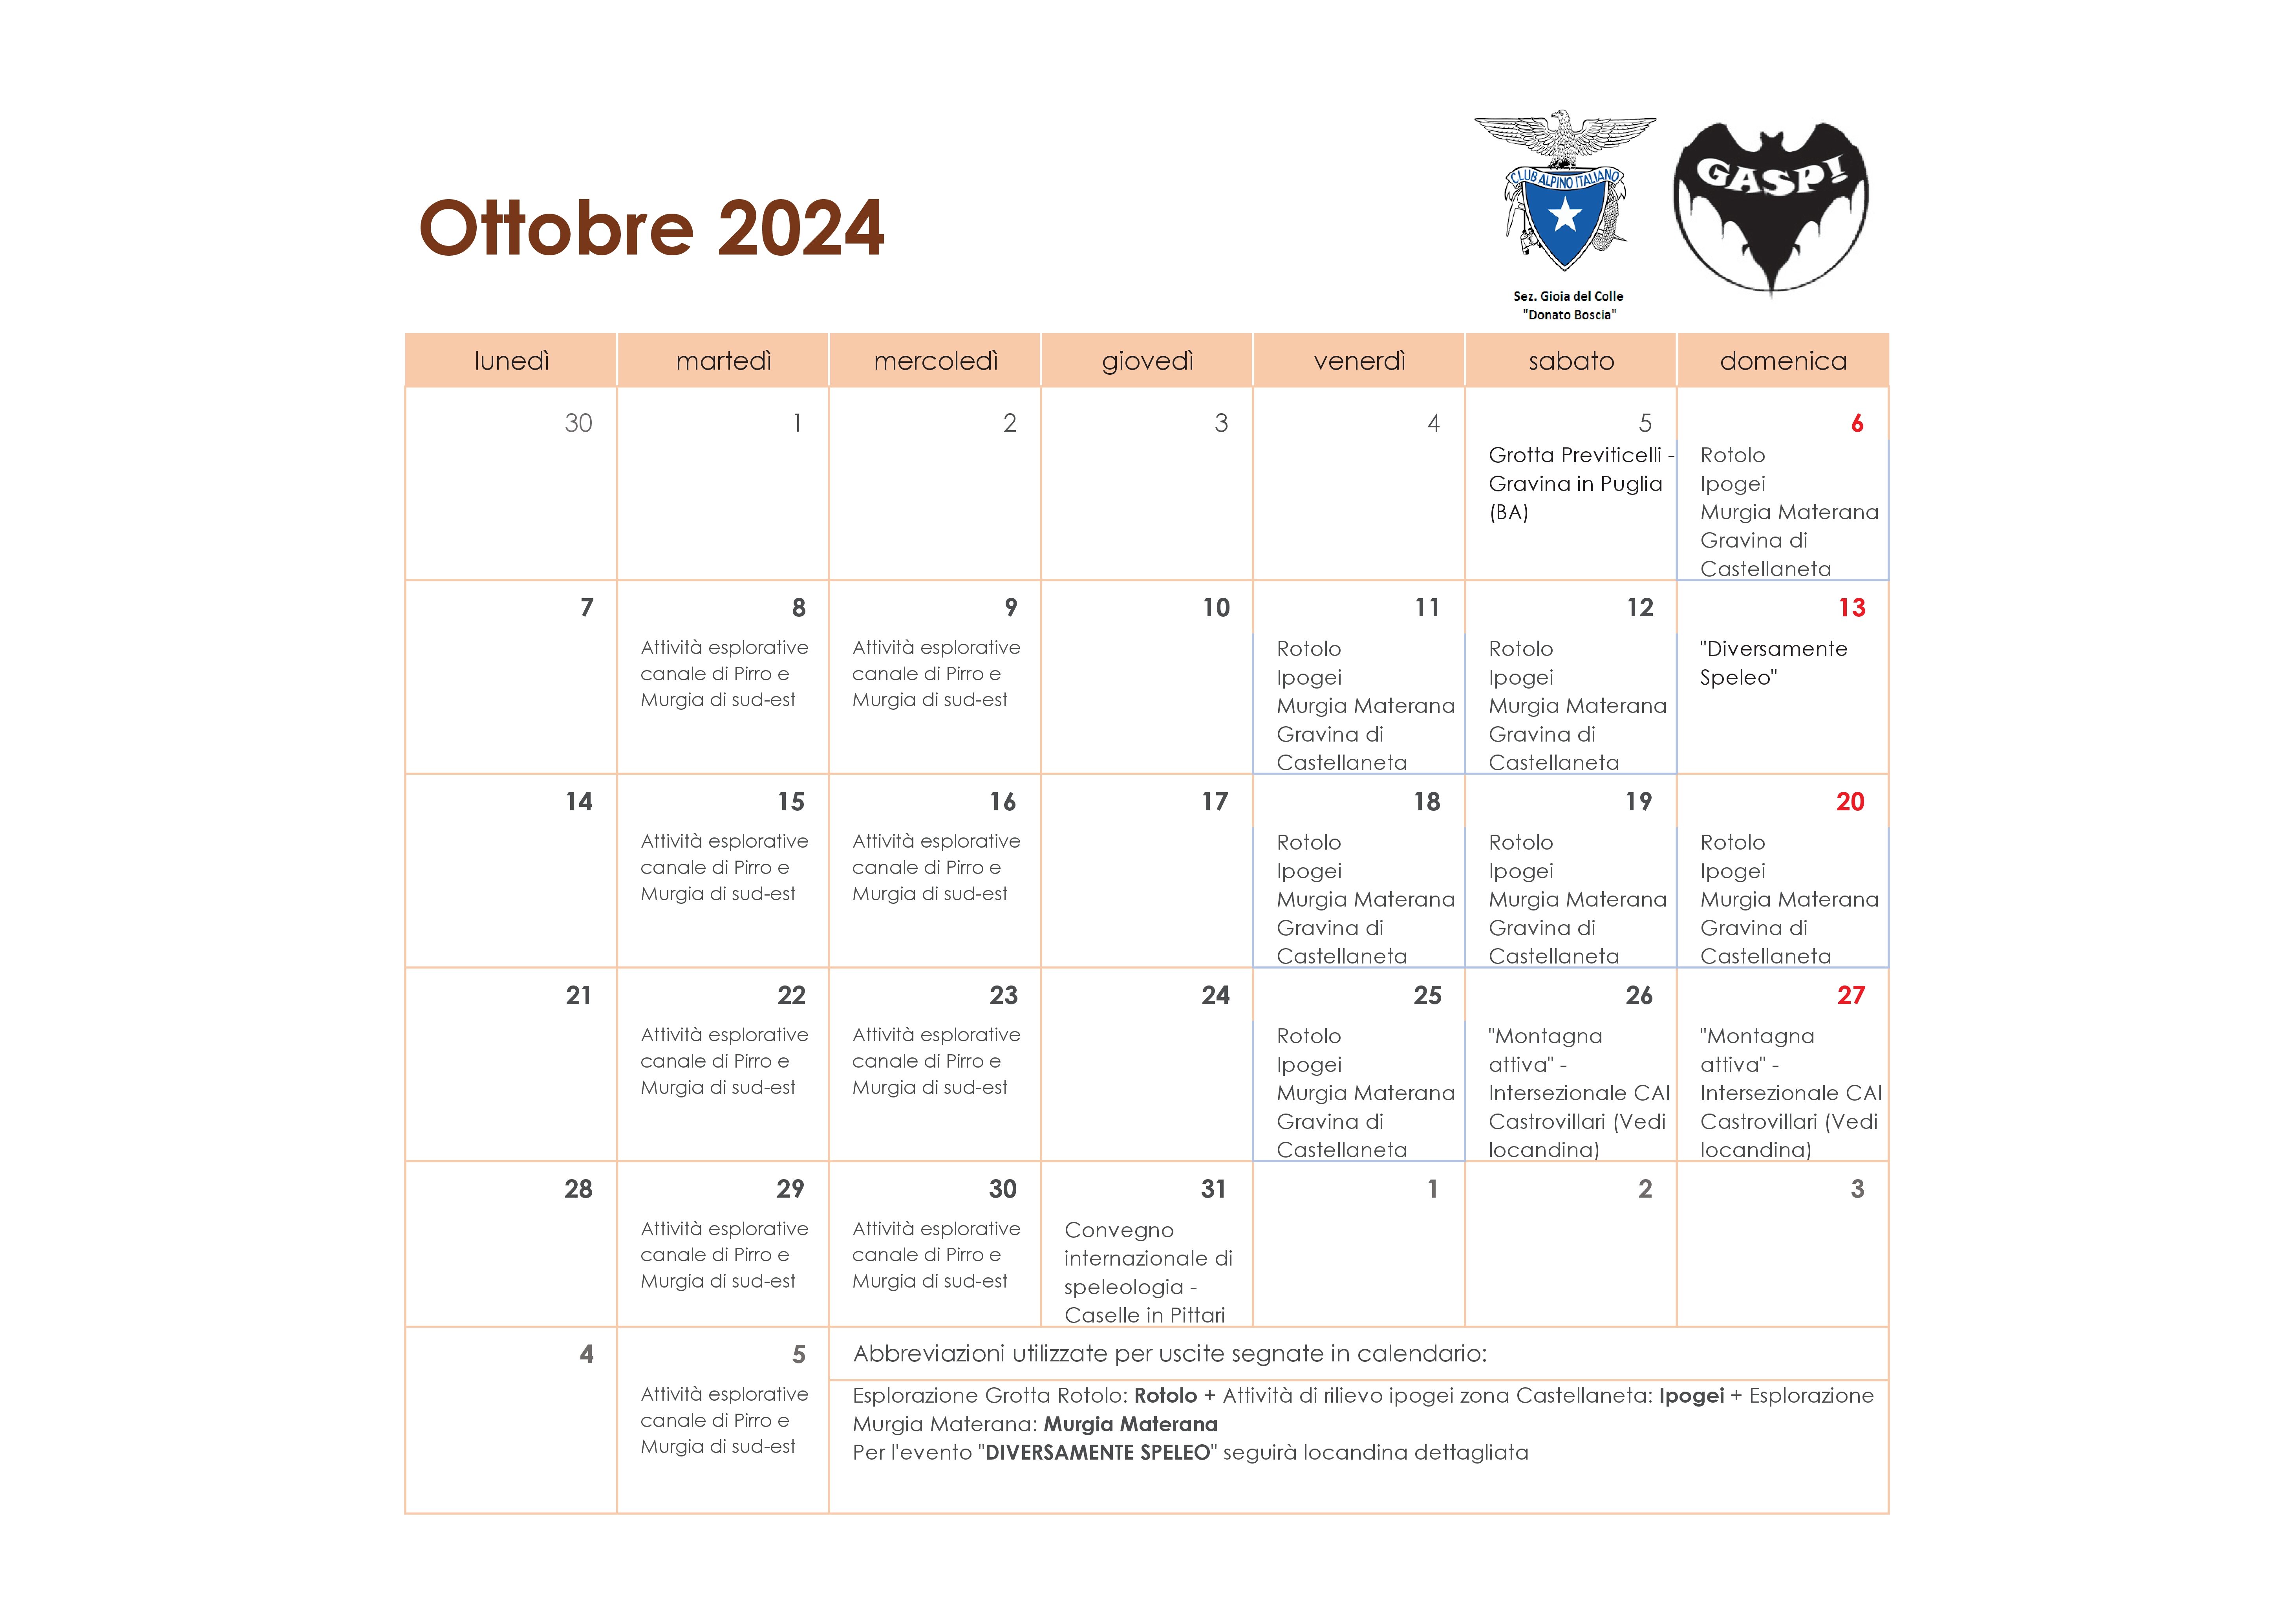 Calendario GASP! 202410